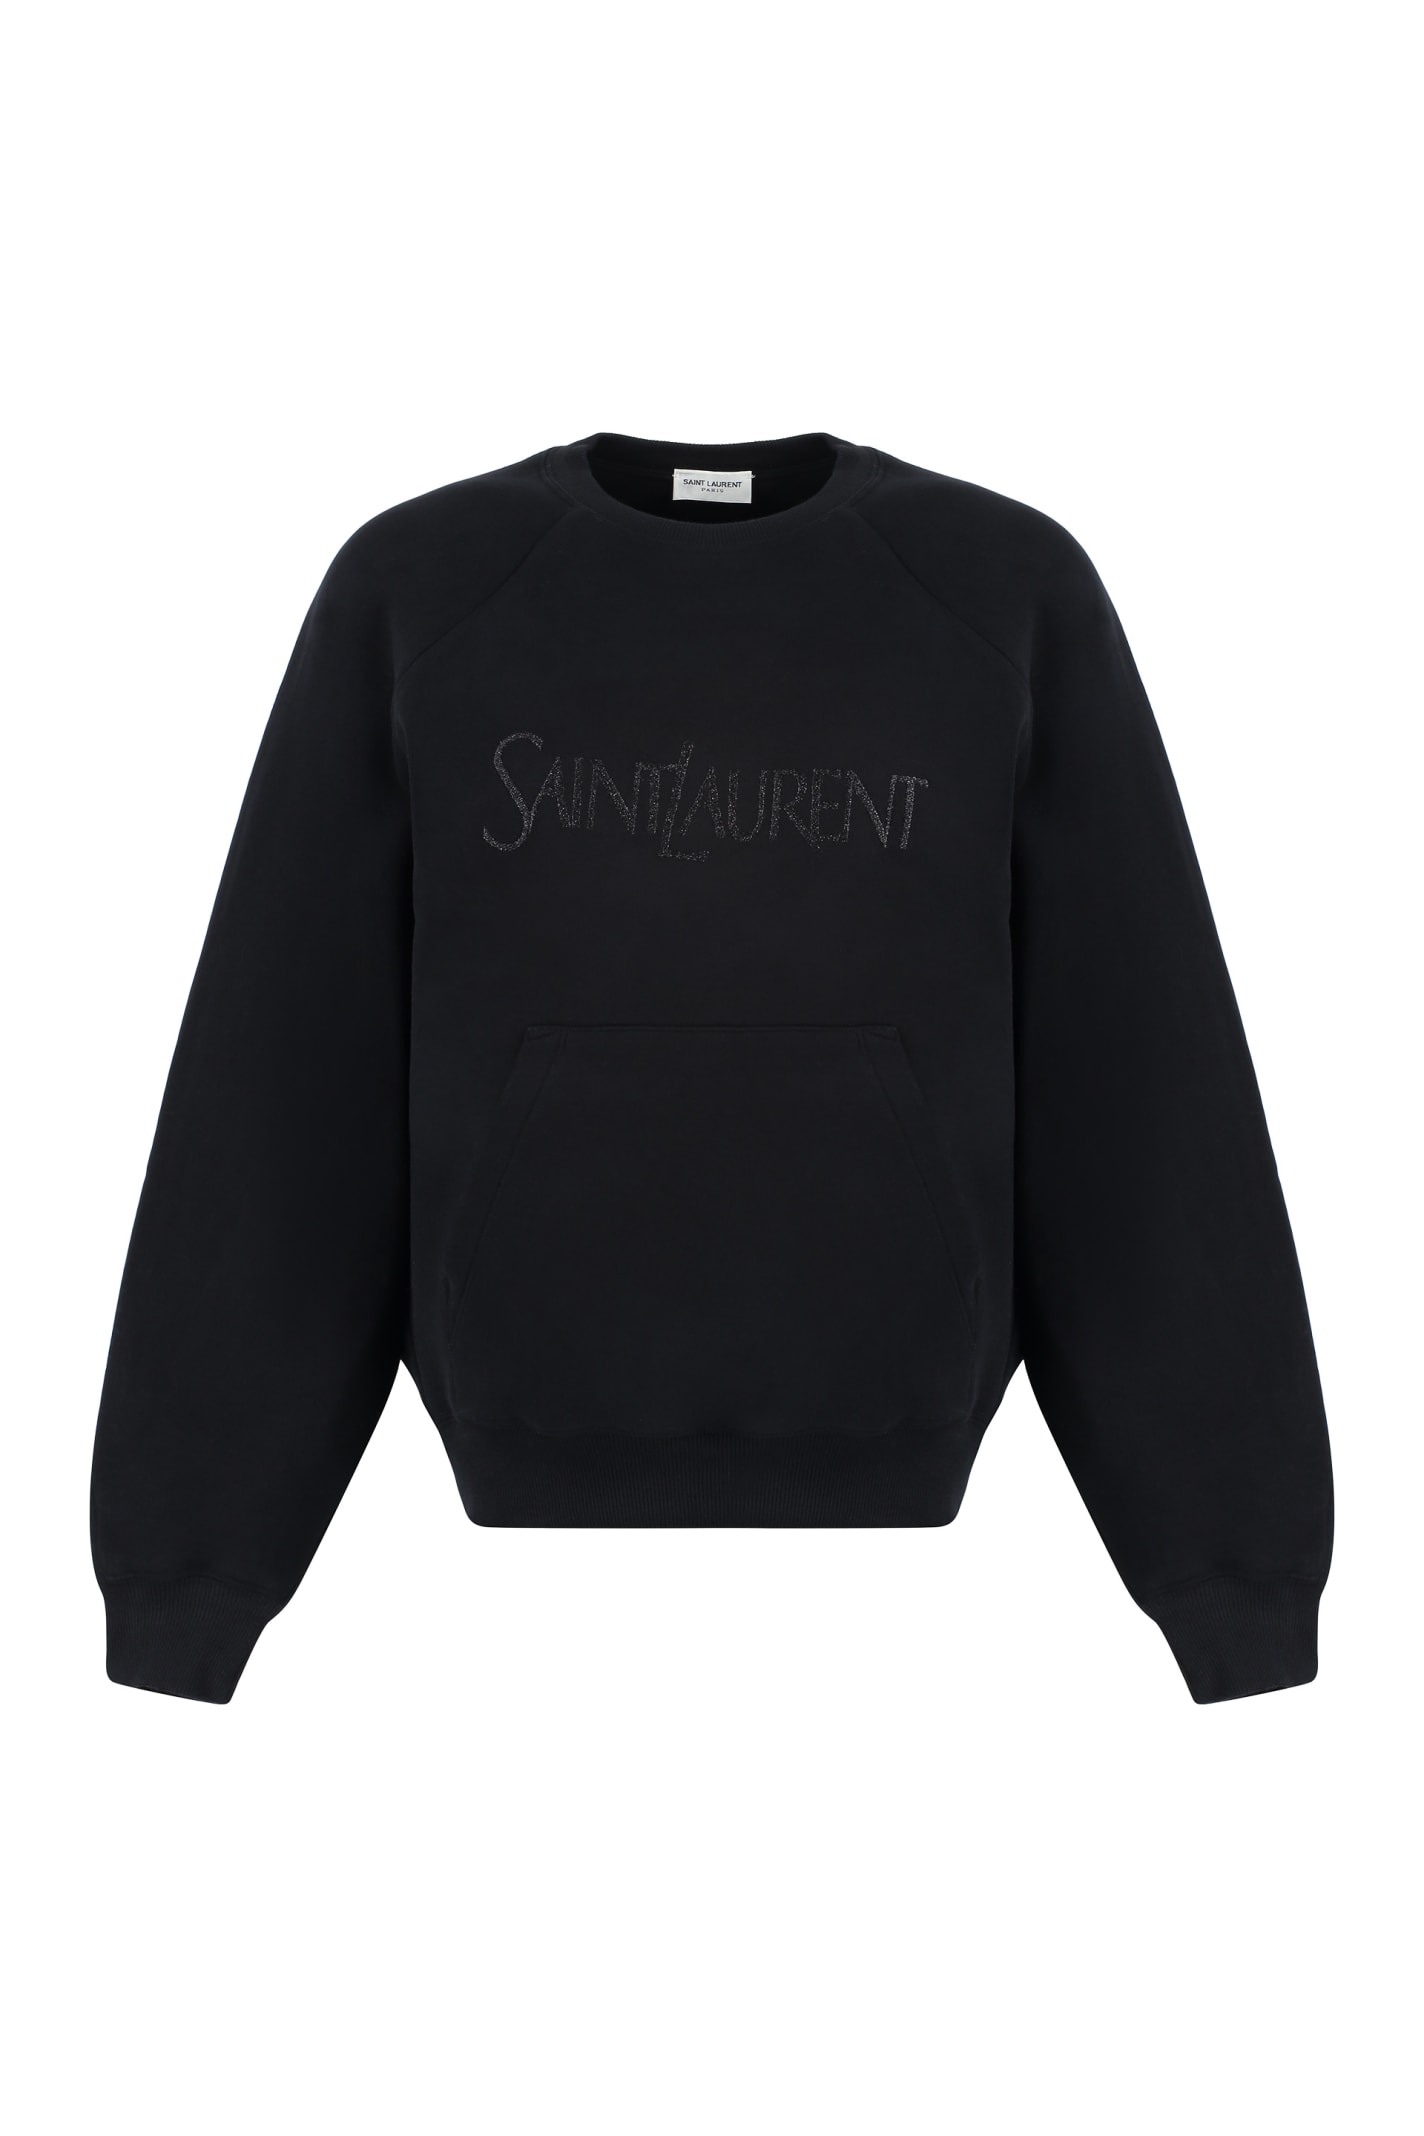 Embroidery Logo Crewneck Sweatshirt - Black — Souletiquette